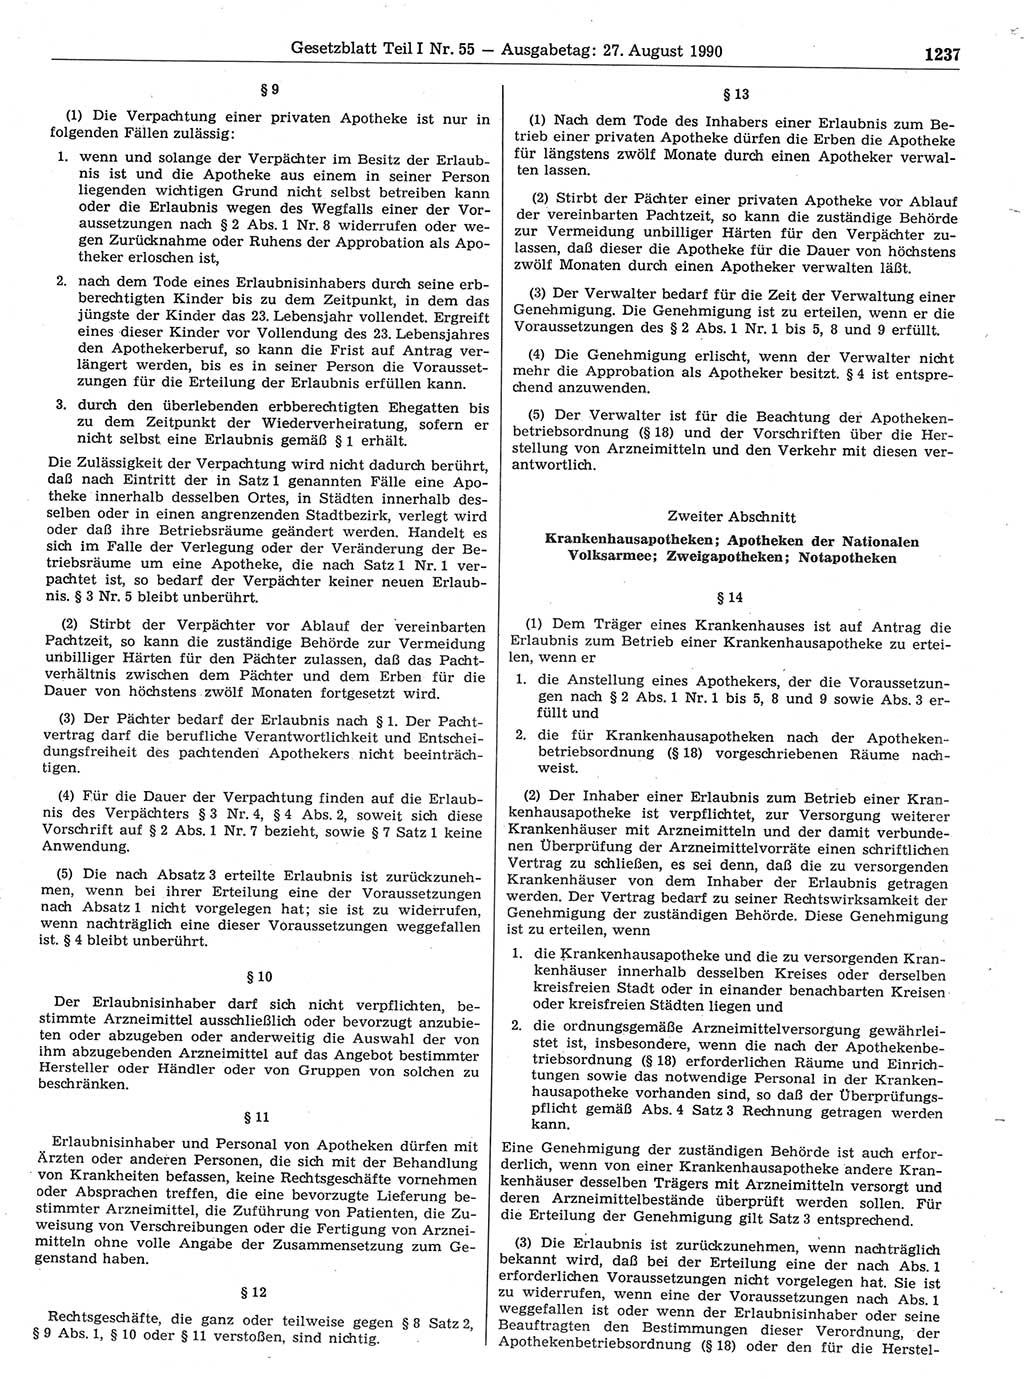 Gesetzblatt (GBl.) der Deutschen Demokratischen Republik (DDR) Teil Ⅰ 1990, Seite 1237 (GBl. DDR Ⅰ 1990, S. 1237)